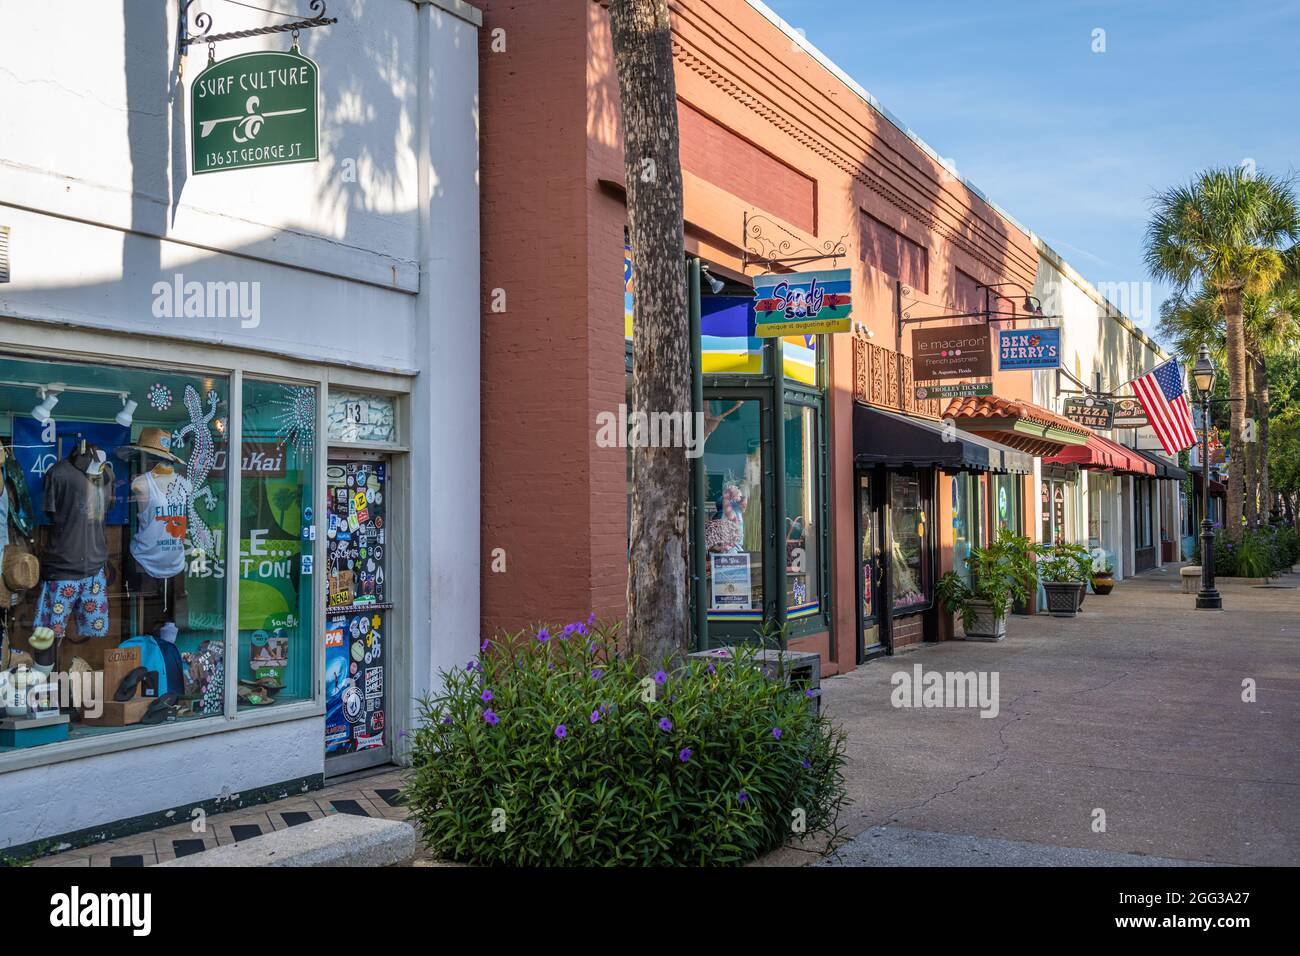 Magasins et restaurants locaux le long de la rue historique de St. George Street dans le quartier historique de St. Augustine, Floride. (ÉTATS-UNIS) Banque D'Images